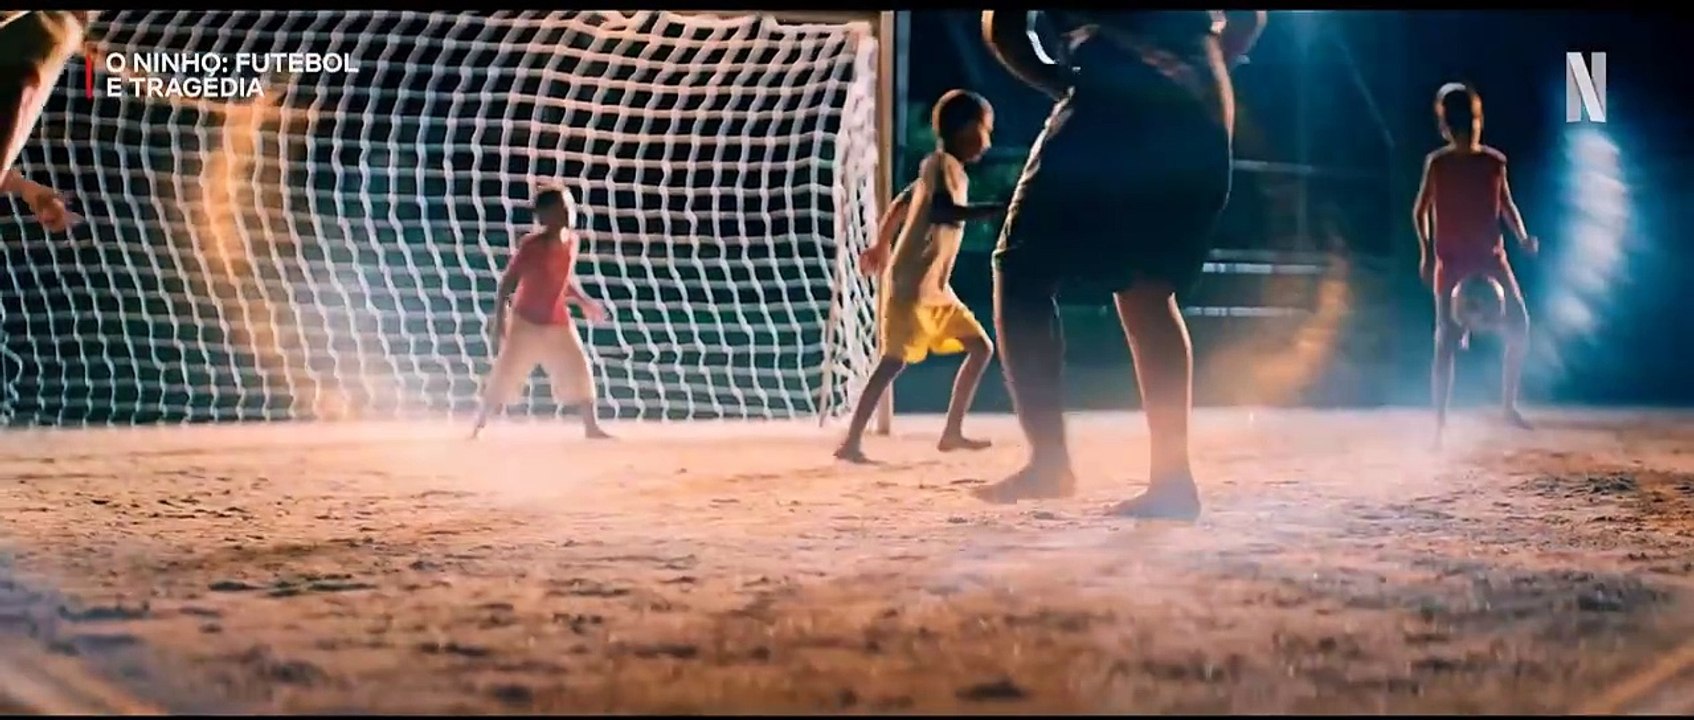 Vom Traum zur Tragödie: Wie ein Brand den brasilianischen Fußball erschütterte Trailer OV